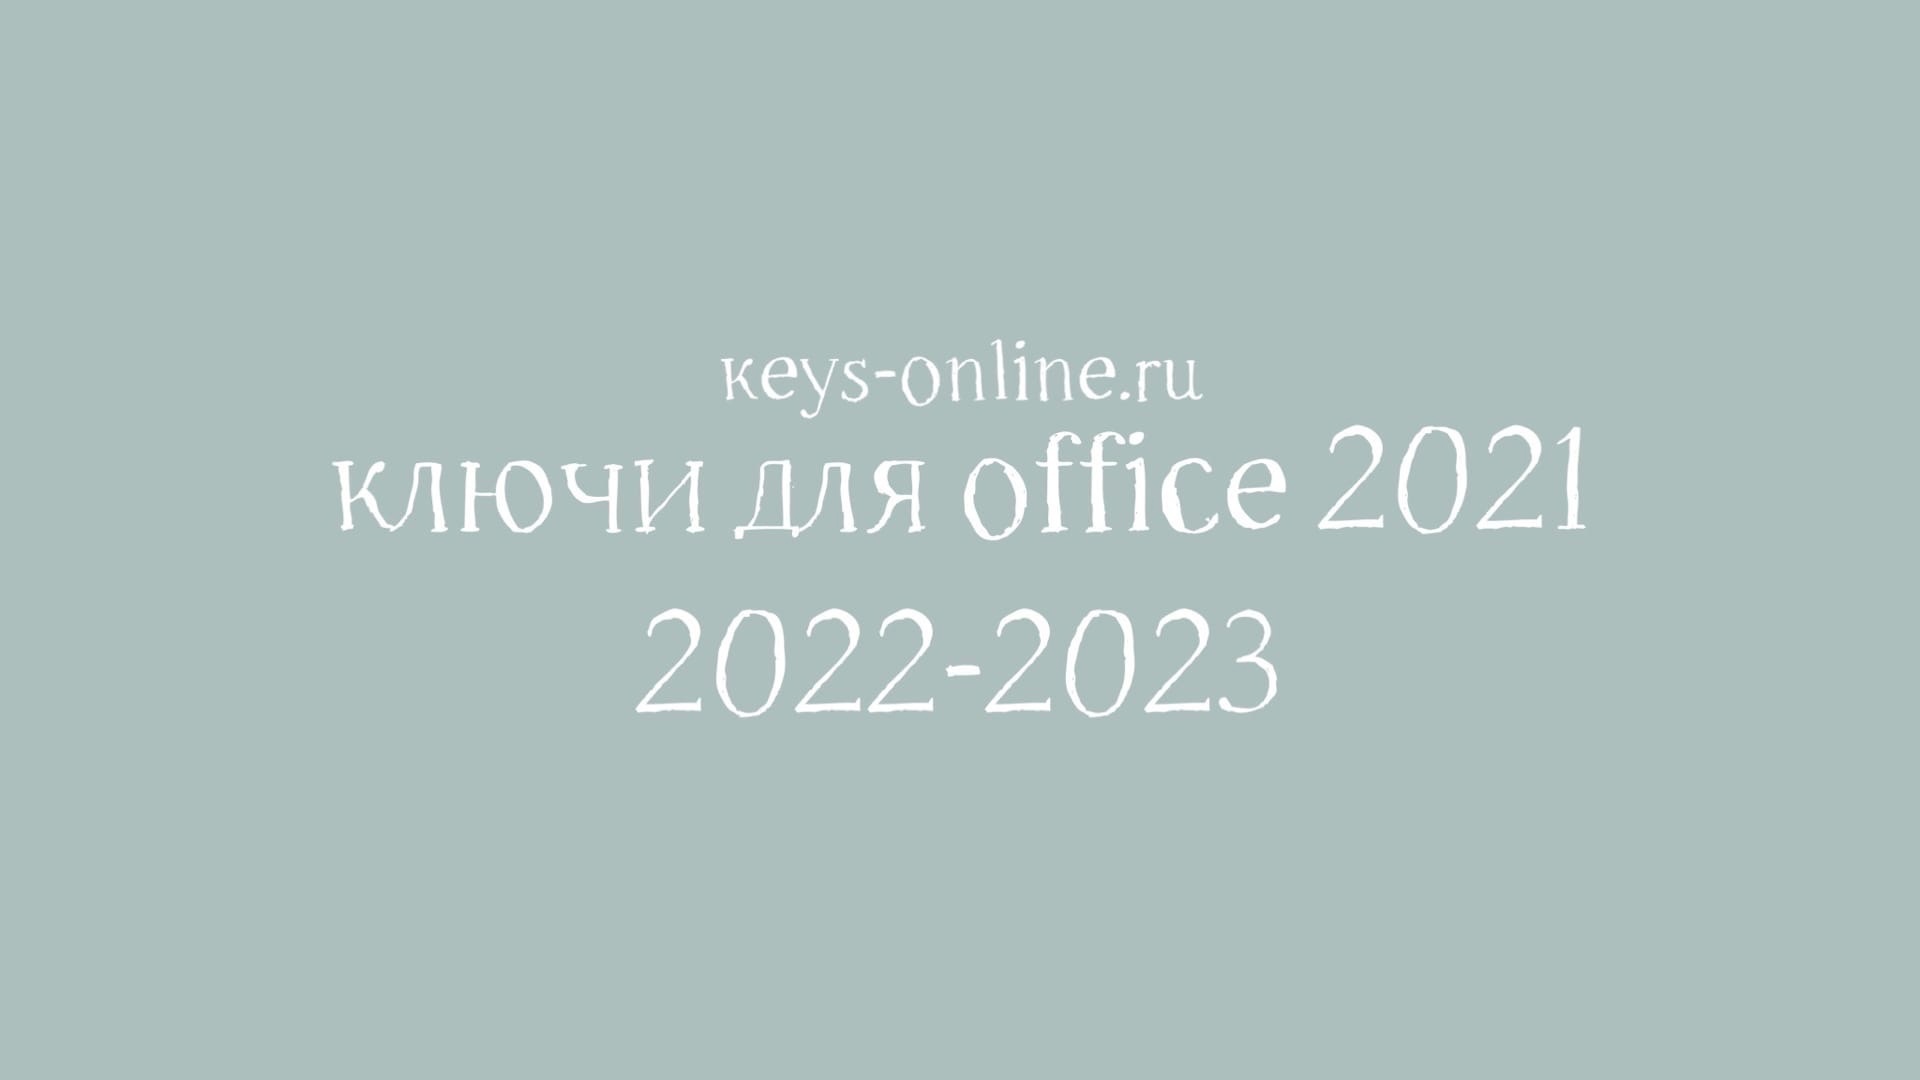 Ключи для Office 2021 — 2022 — 2023